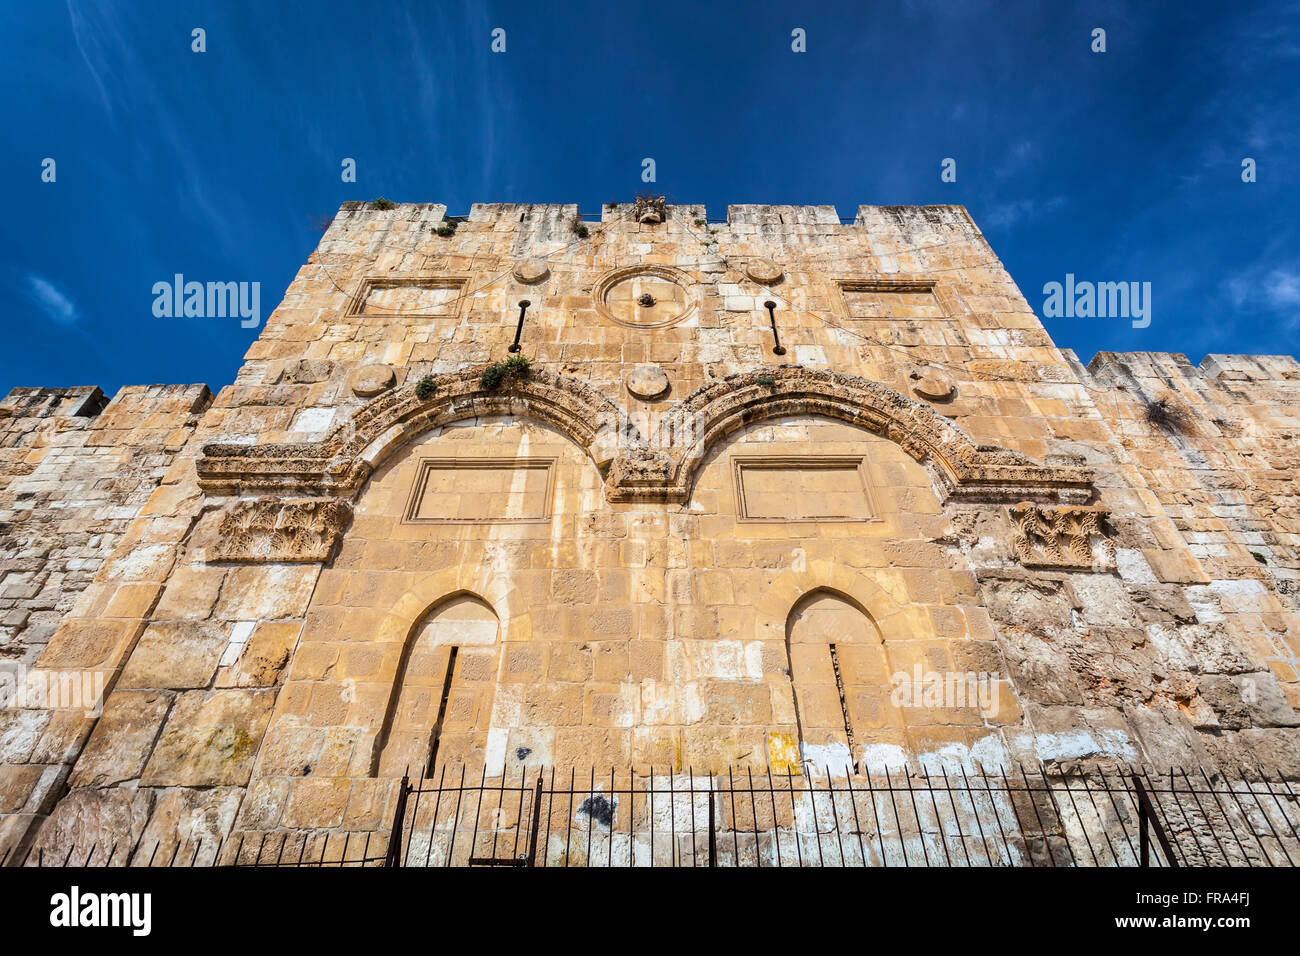 La porte de l'Est, la vieille ville de Jérusalem, Jérusalem, Israël Banque D'Images